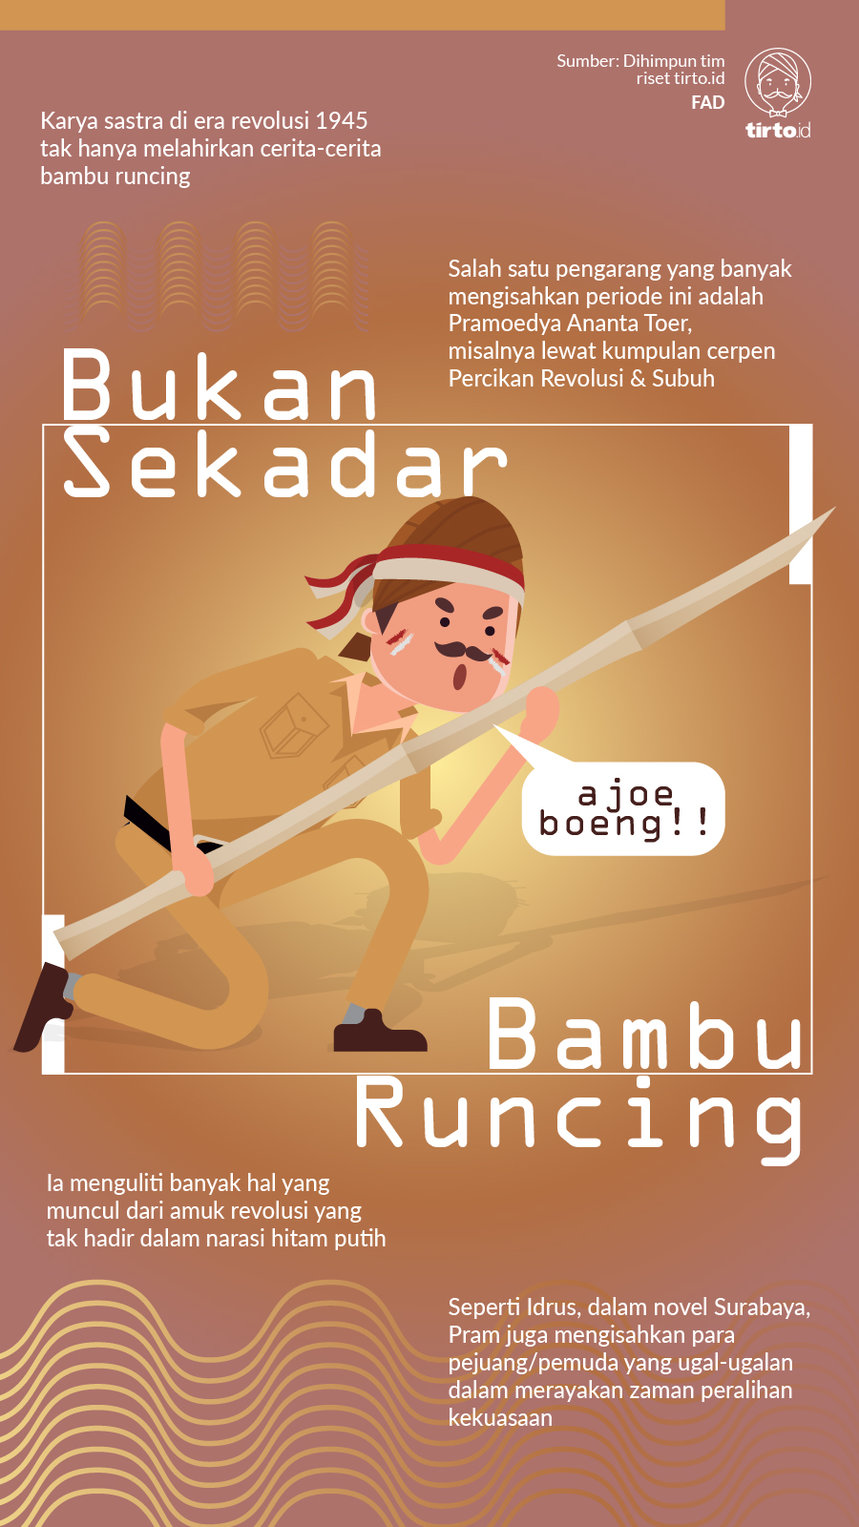 Infografik Bukan Sekadar Bambu Runcing